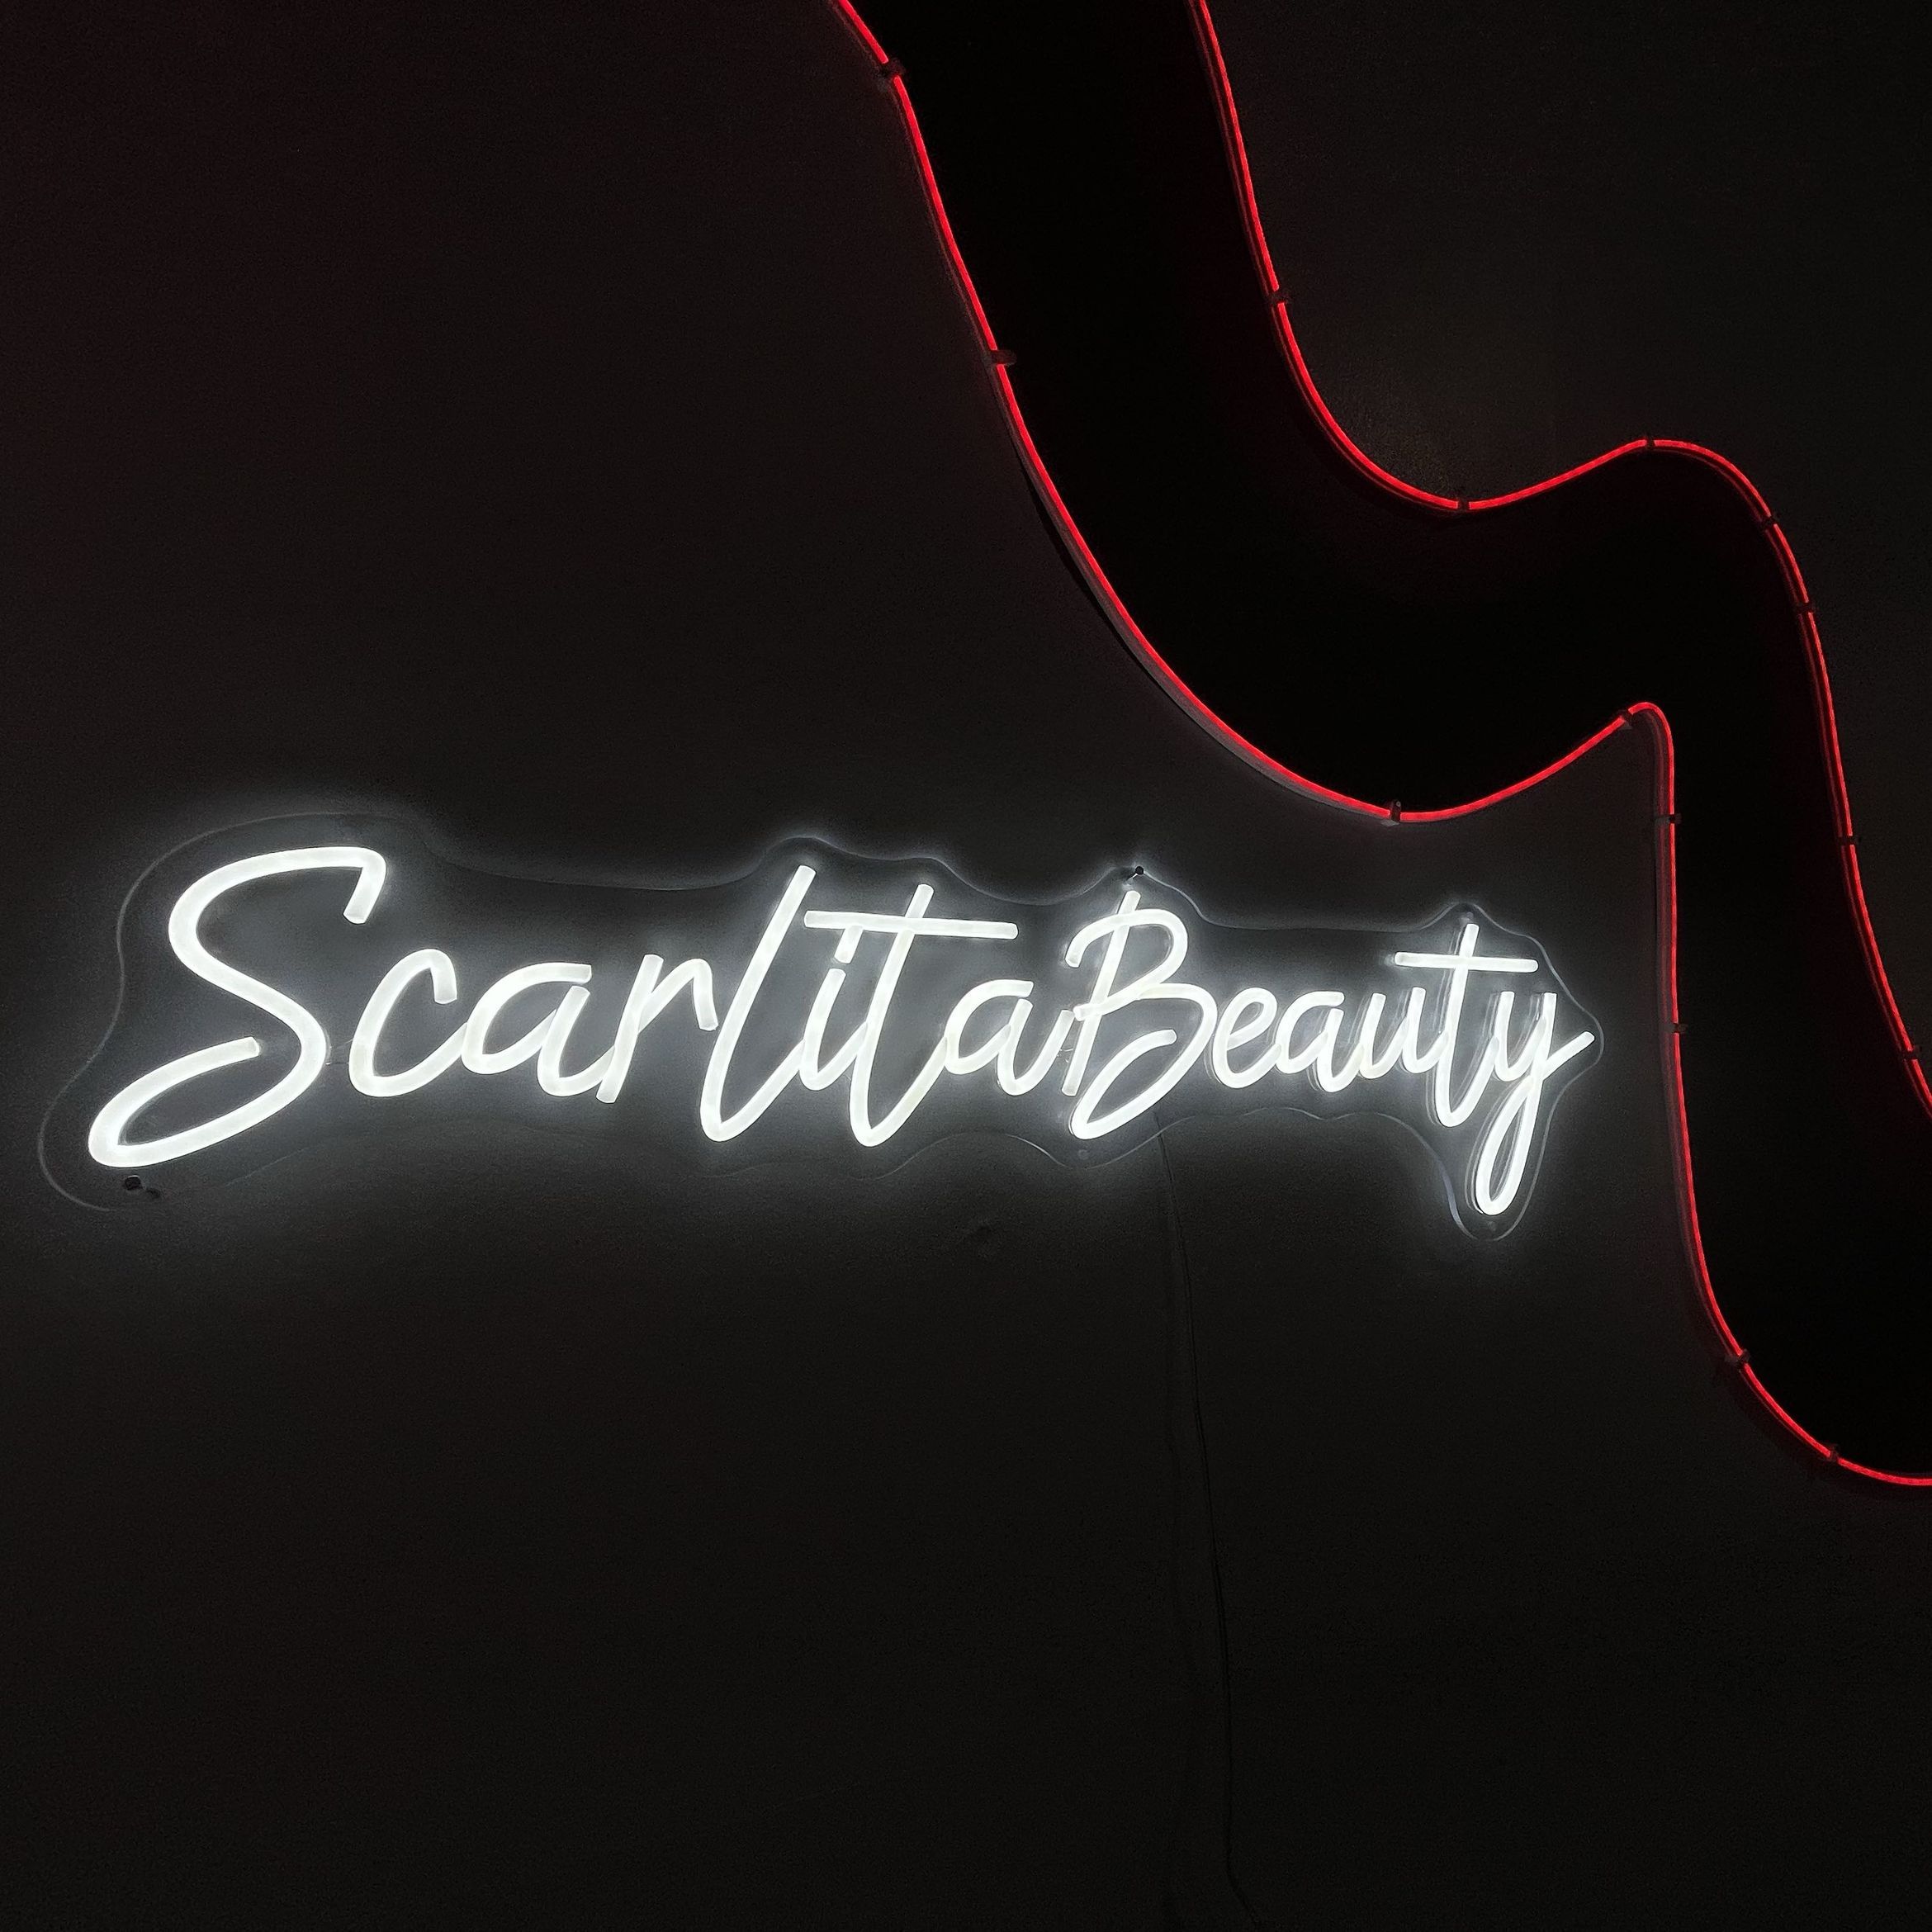 Scarlita Beauty, 1250 N La Brea Ave, West Hollywood, 90038